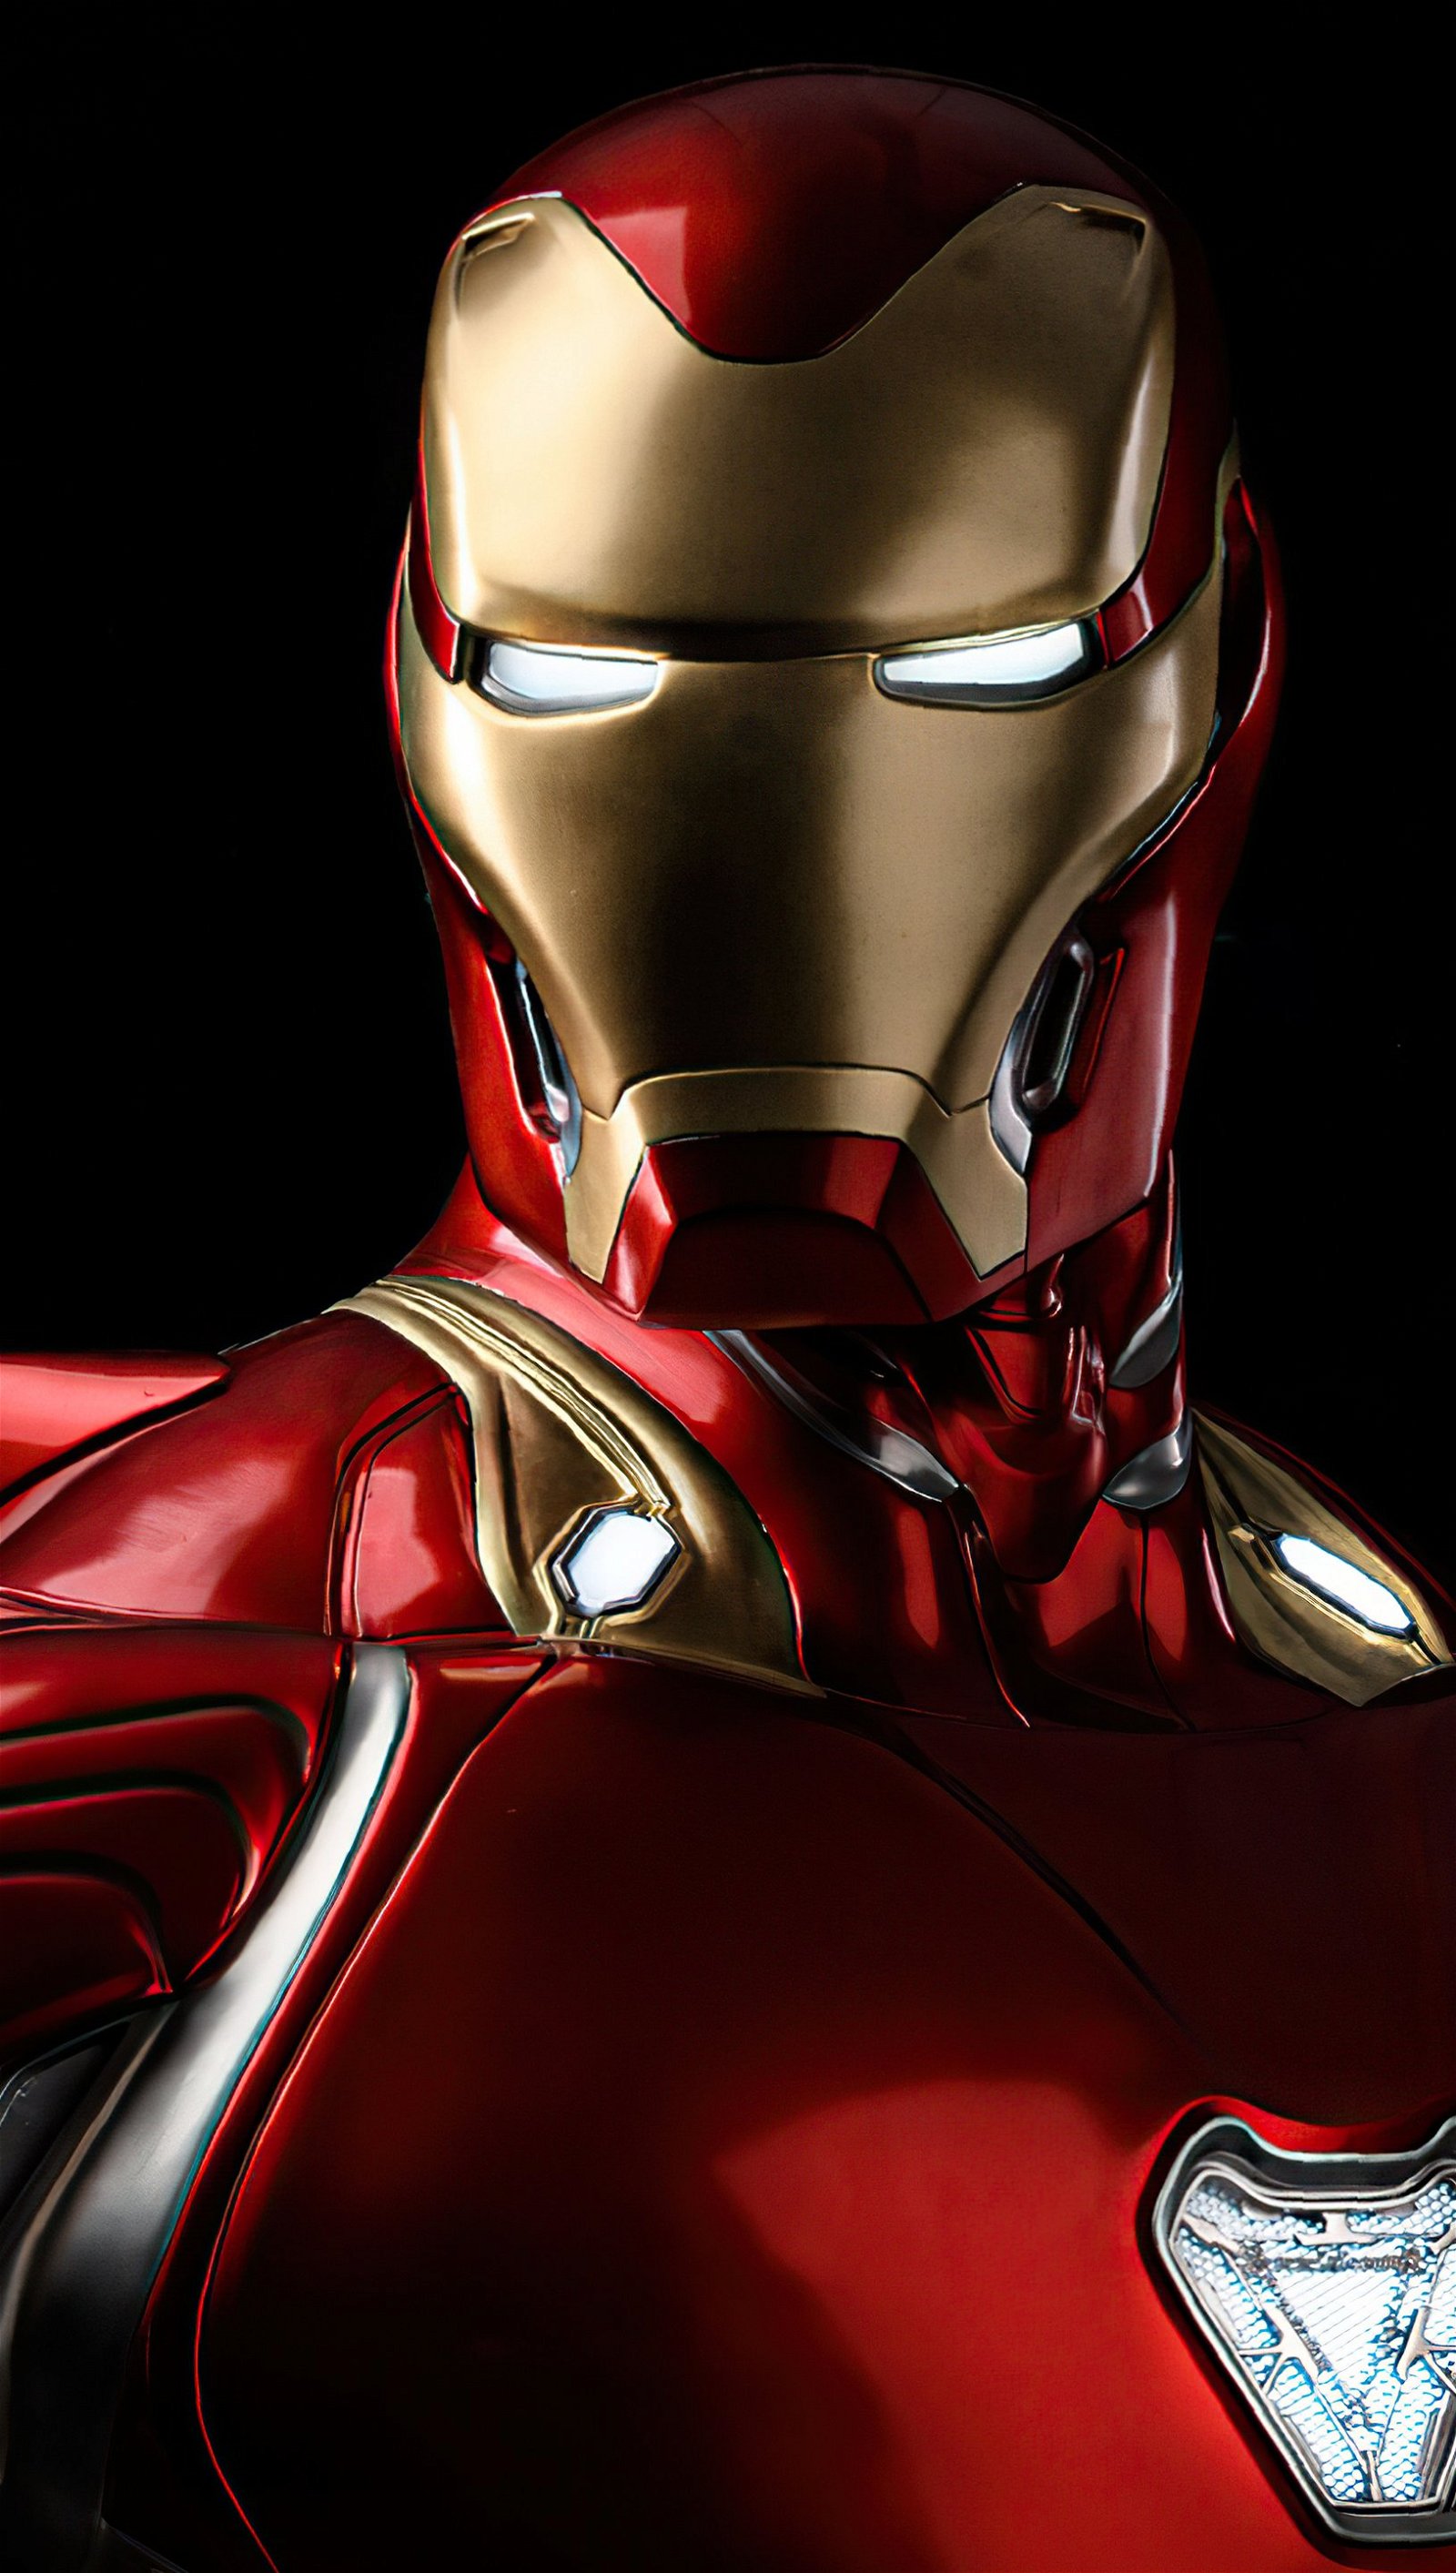 Iron man glowing eyes